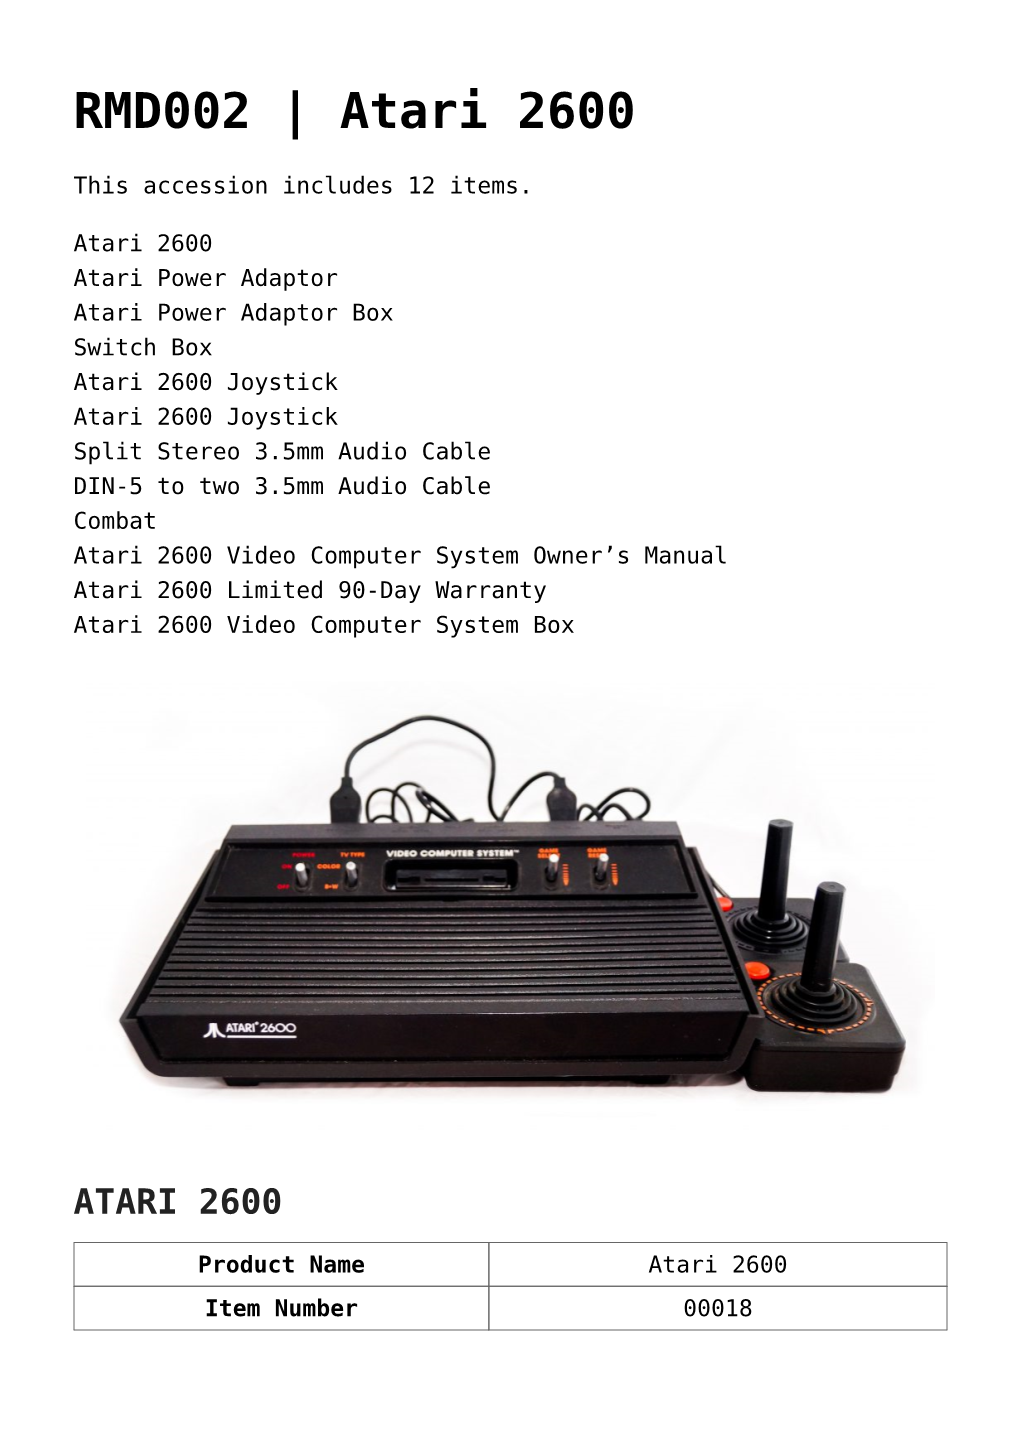 RMD002 | Atari 2600